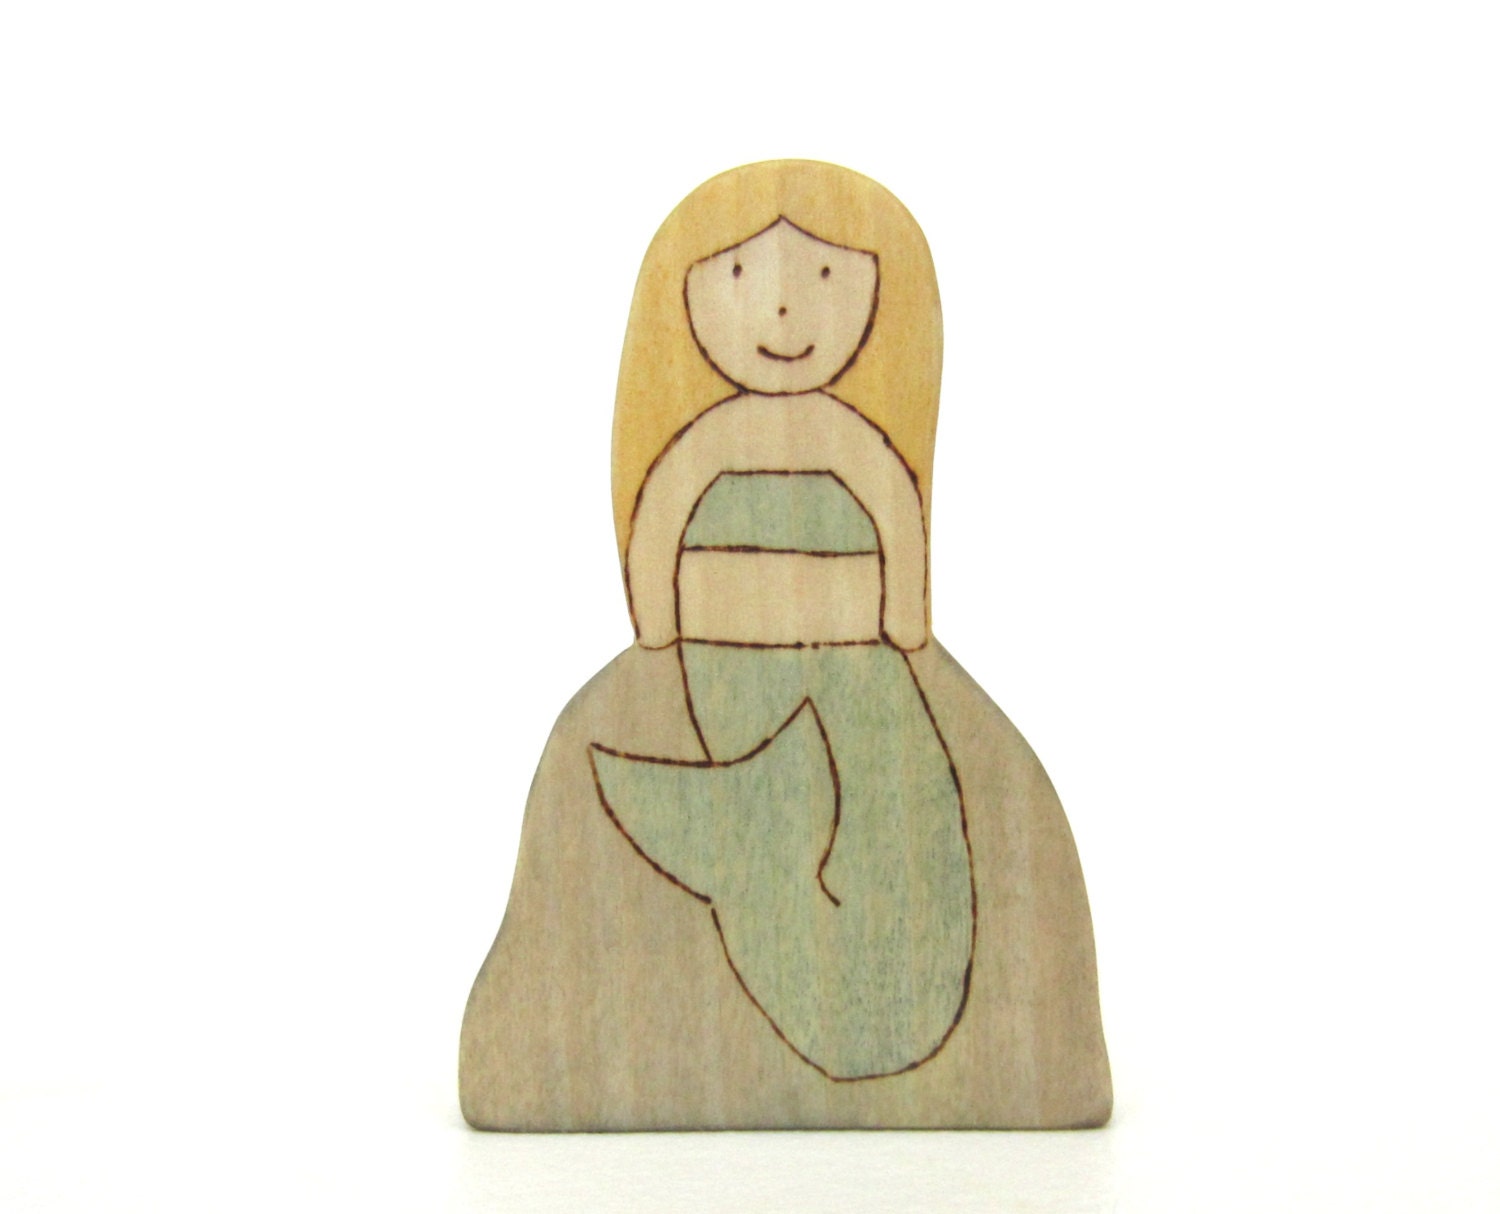 Mermaid Toy - Wooden Toy Mermaid - Wood Mermaid Toy - All Natural Toy - LittleWoodlanders